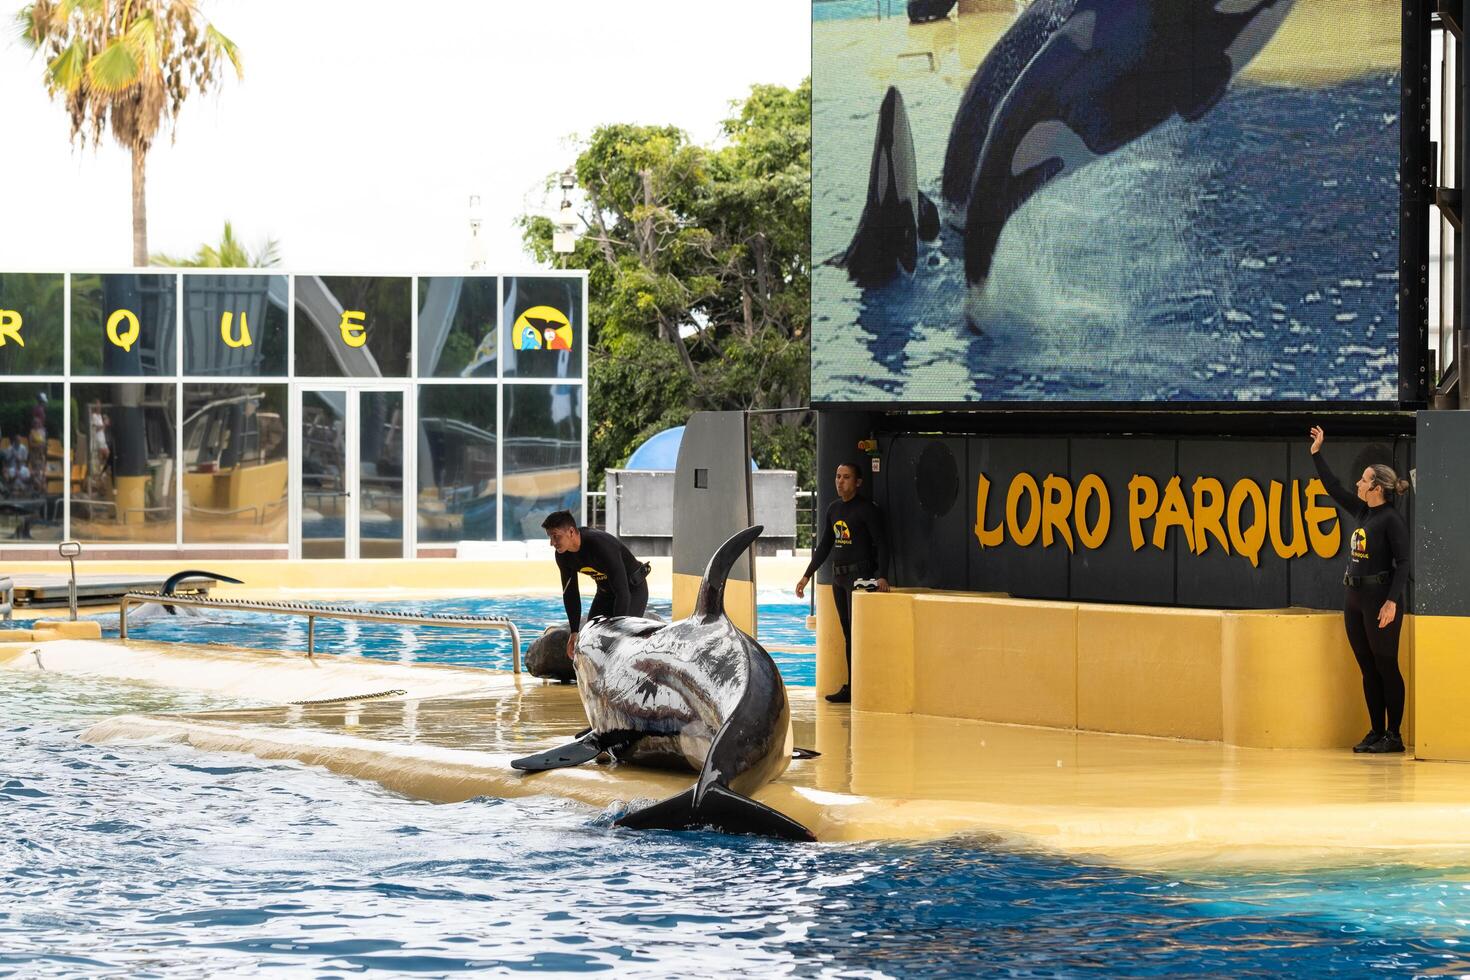 luglio 26, 2019, canarino isole, Spagna. uccisore balene eseguire nel il piscina folla a Loro parco su il isola di tenerife foto